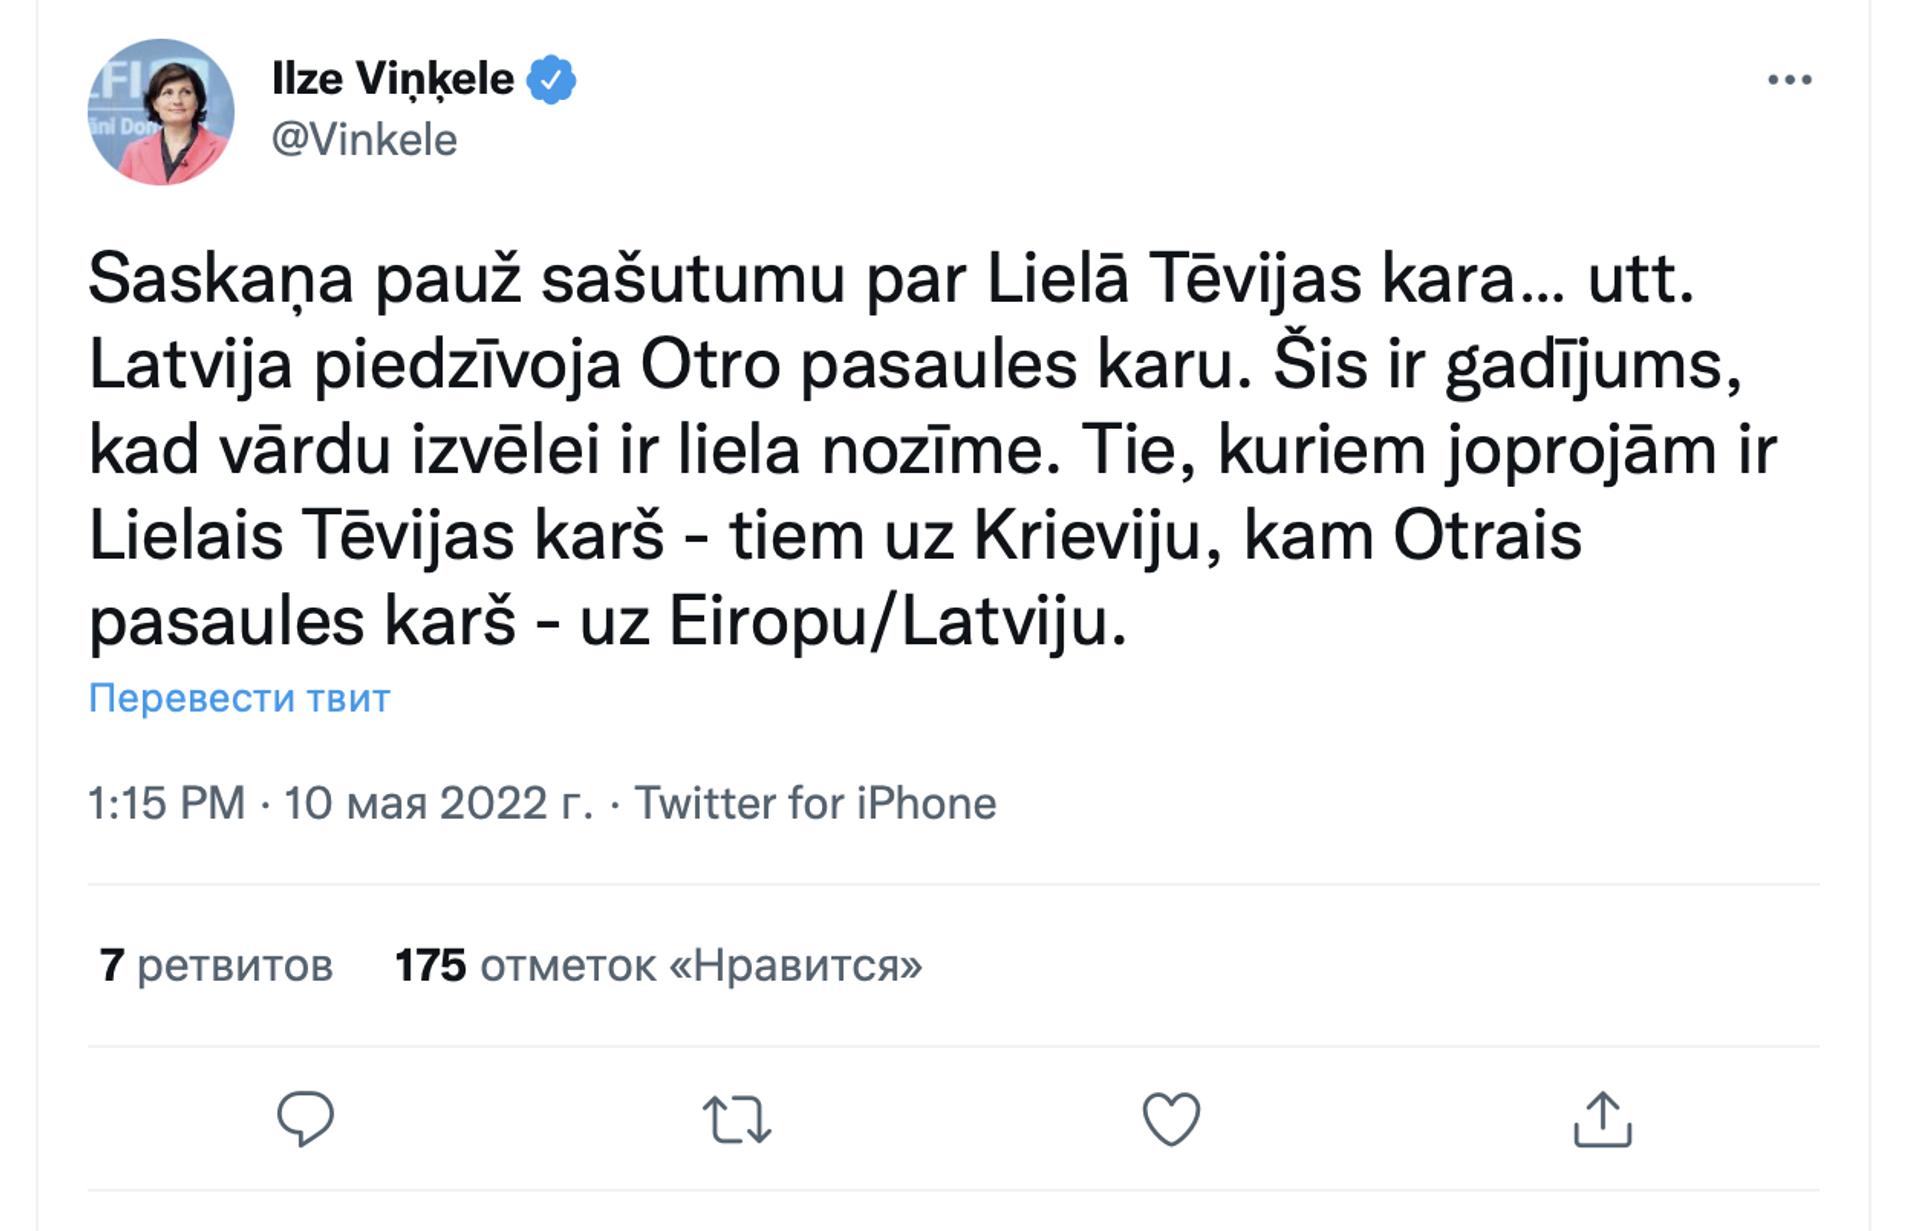 Скриншот поста в Twitter  - Sputnik Латвия, 1920, 11.05.2022